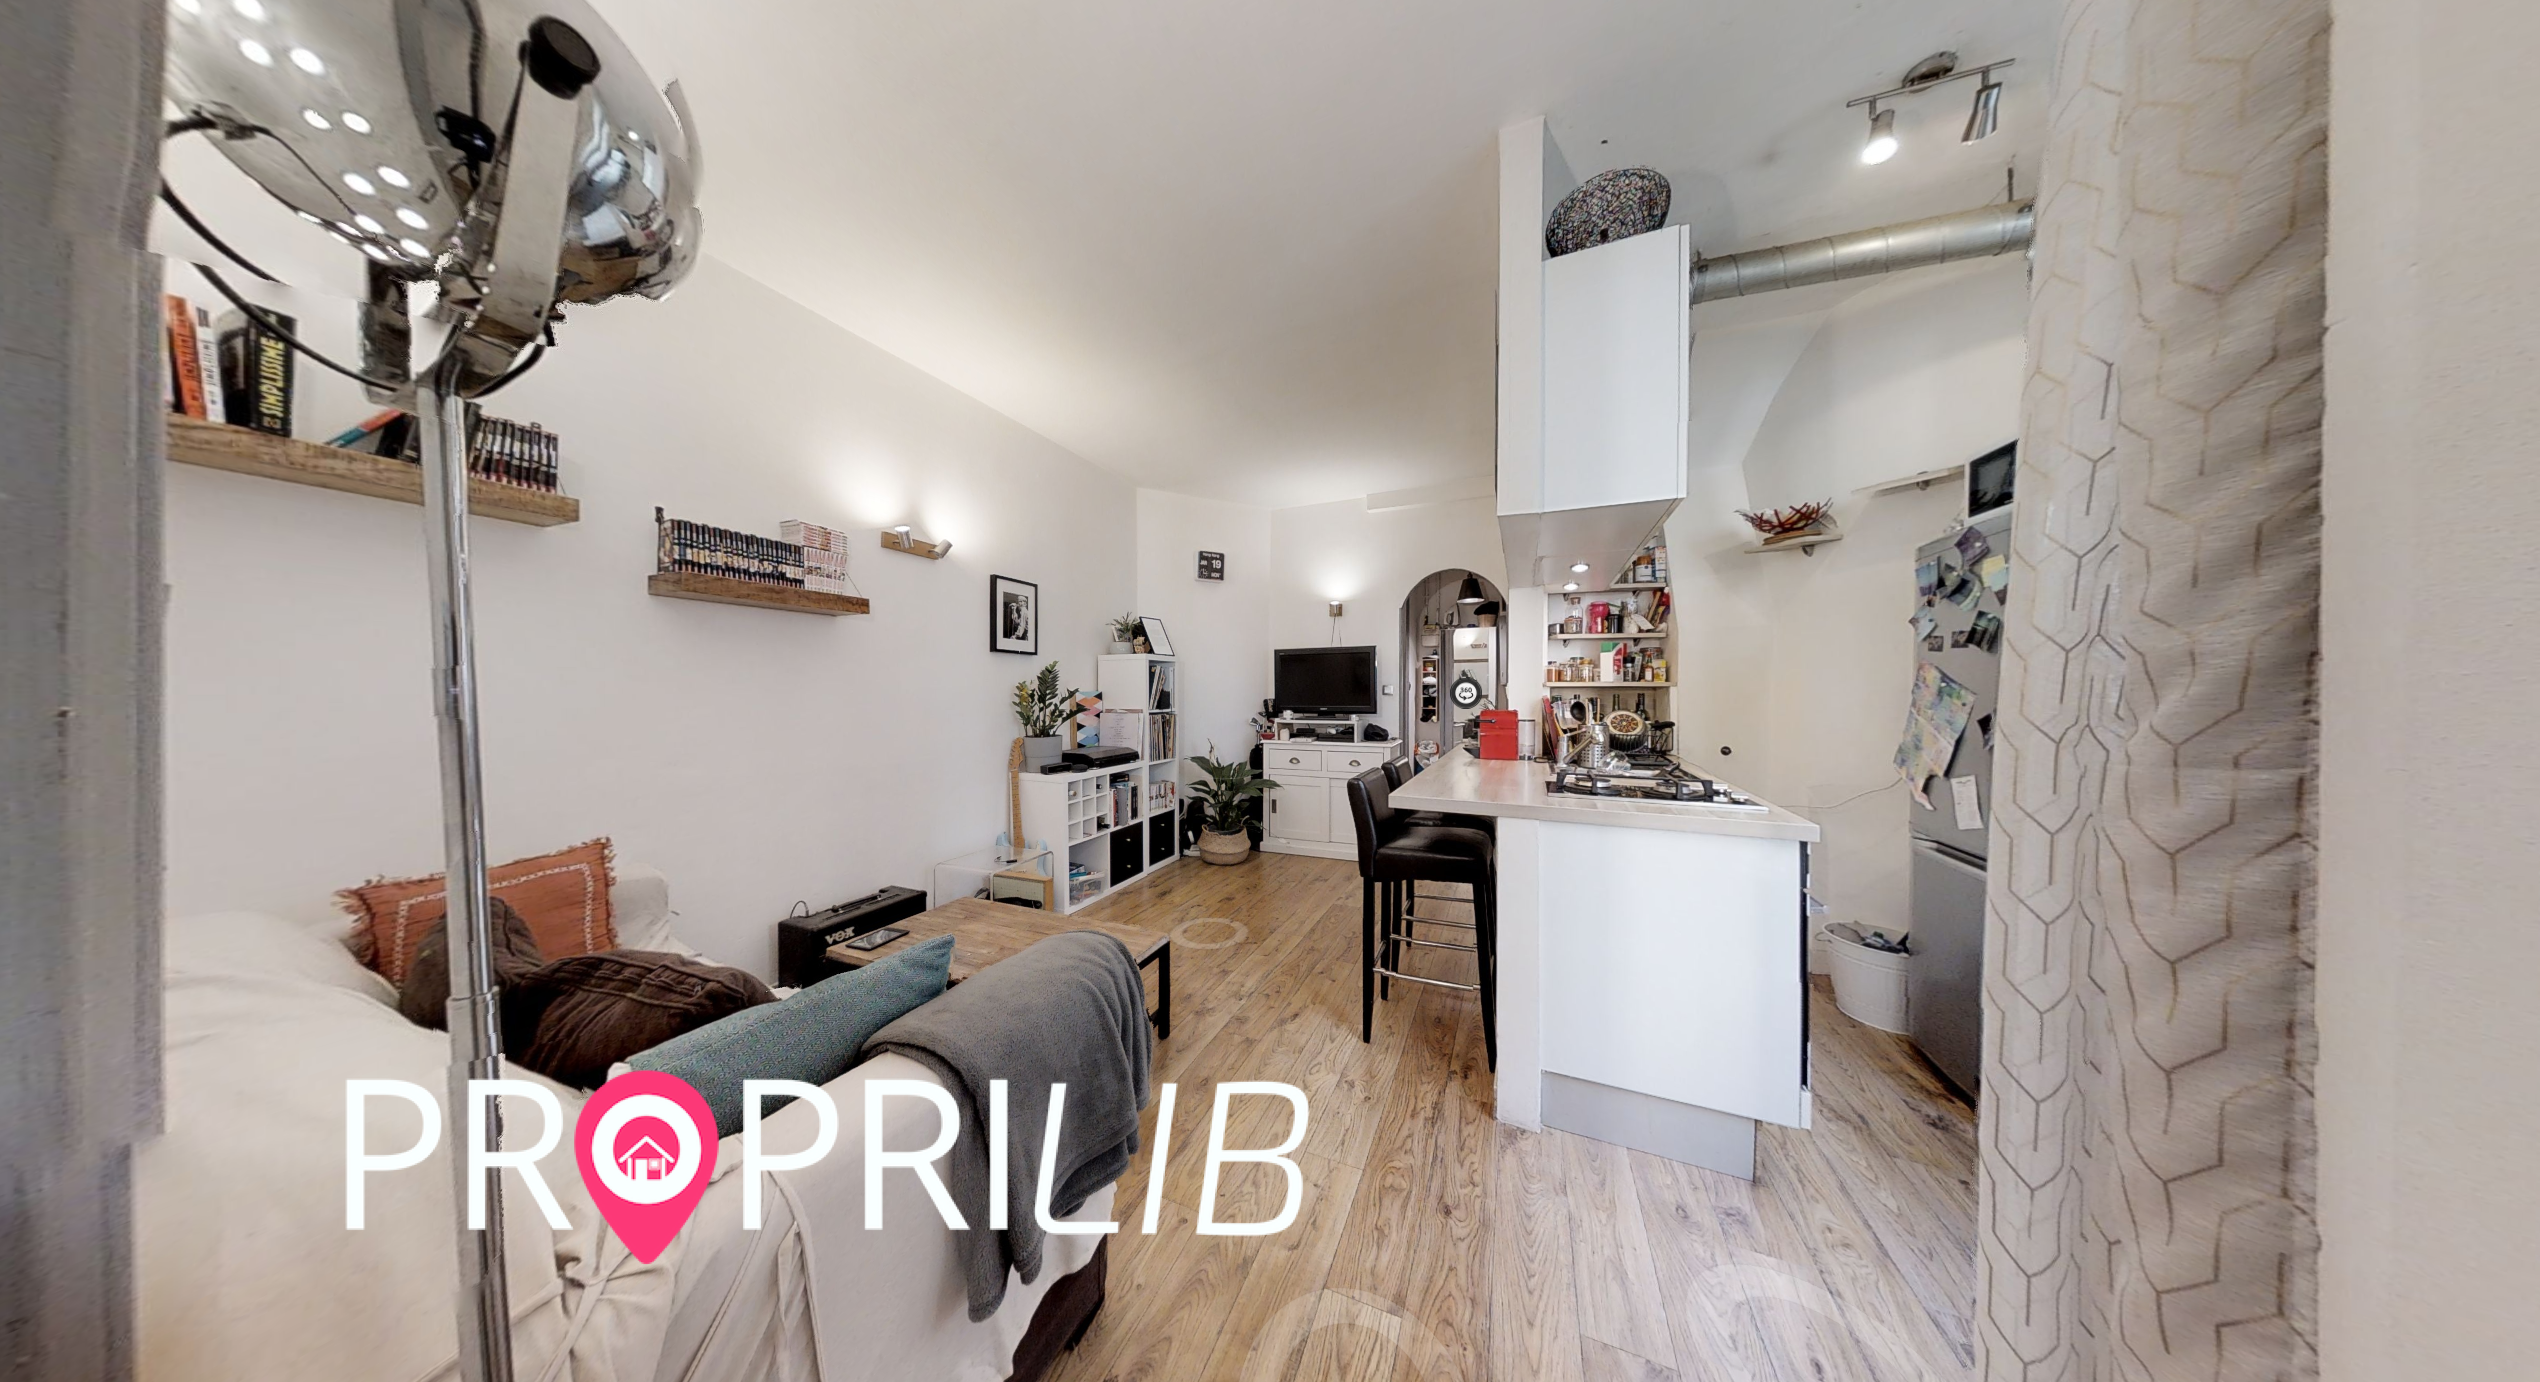 PropriLib l’agence immobilière en ligne au forfait vend cet appartement à Paris 18 ème